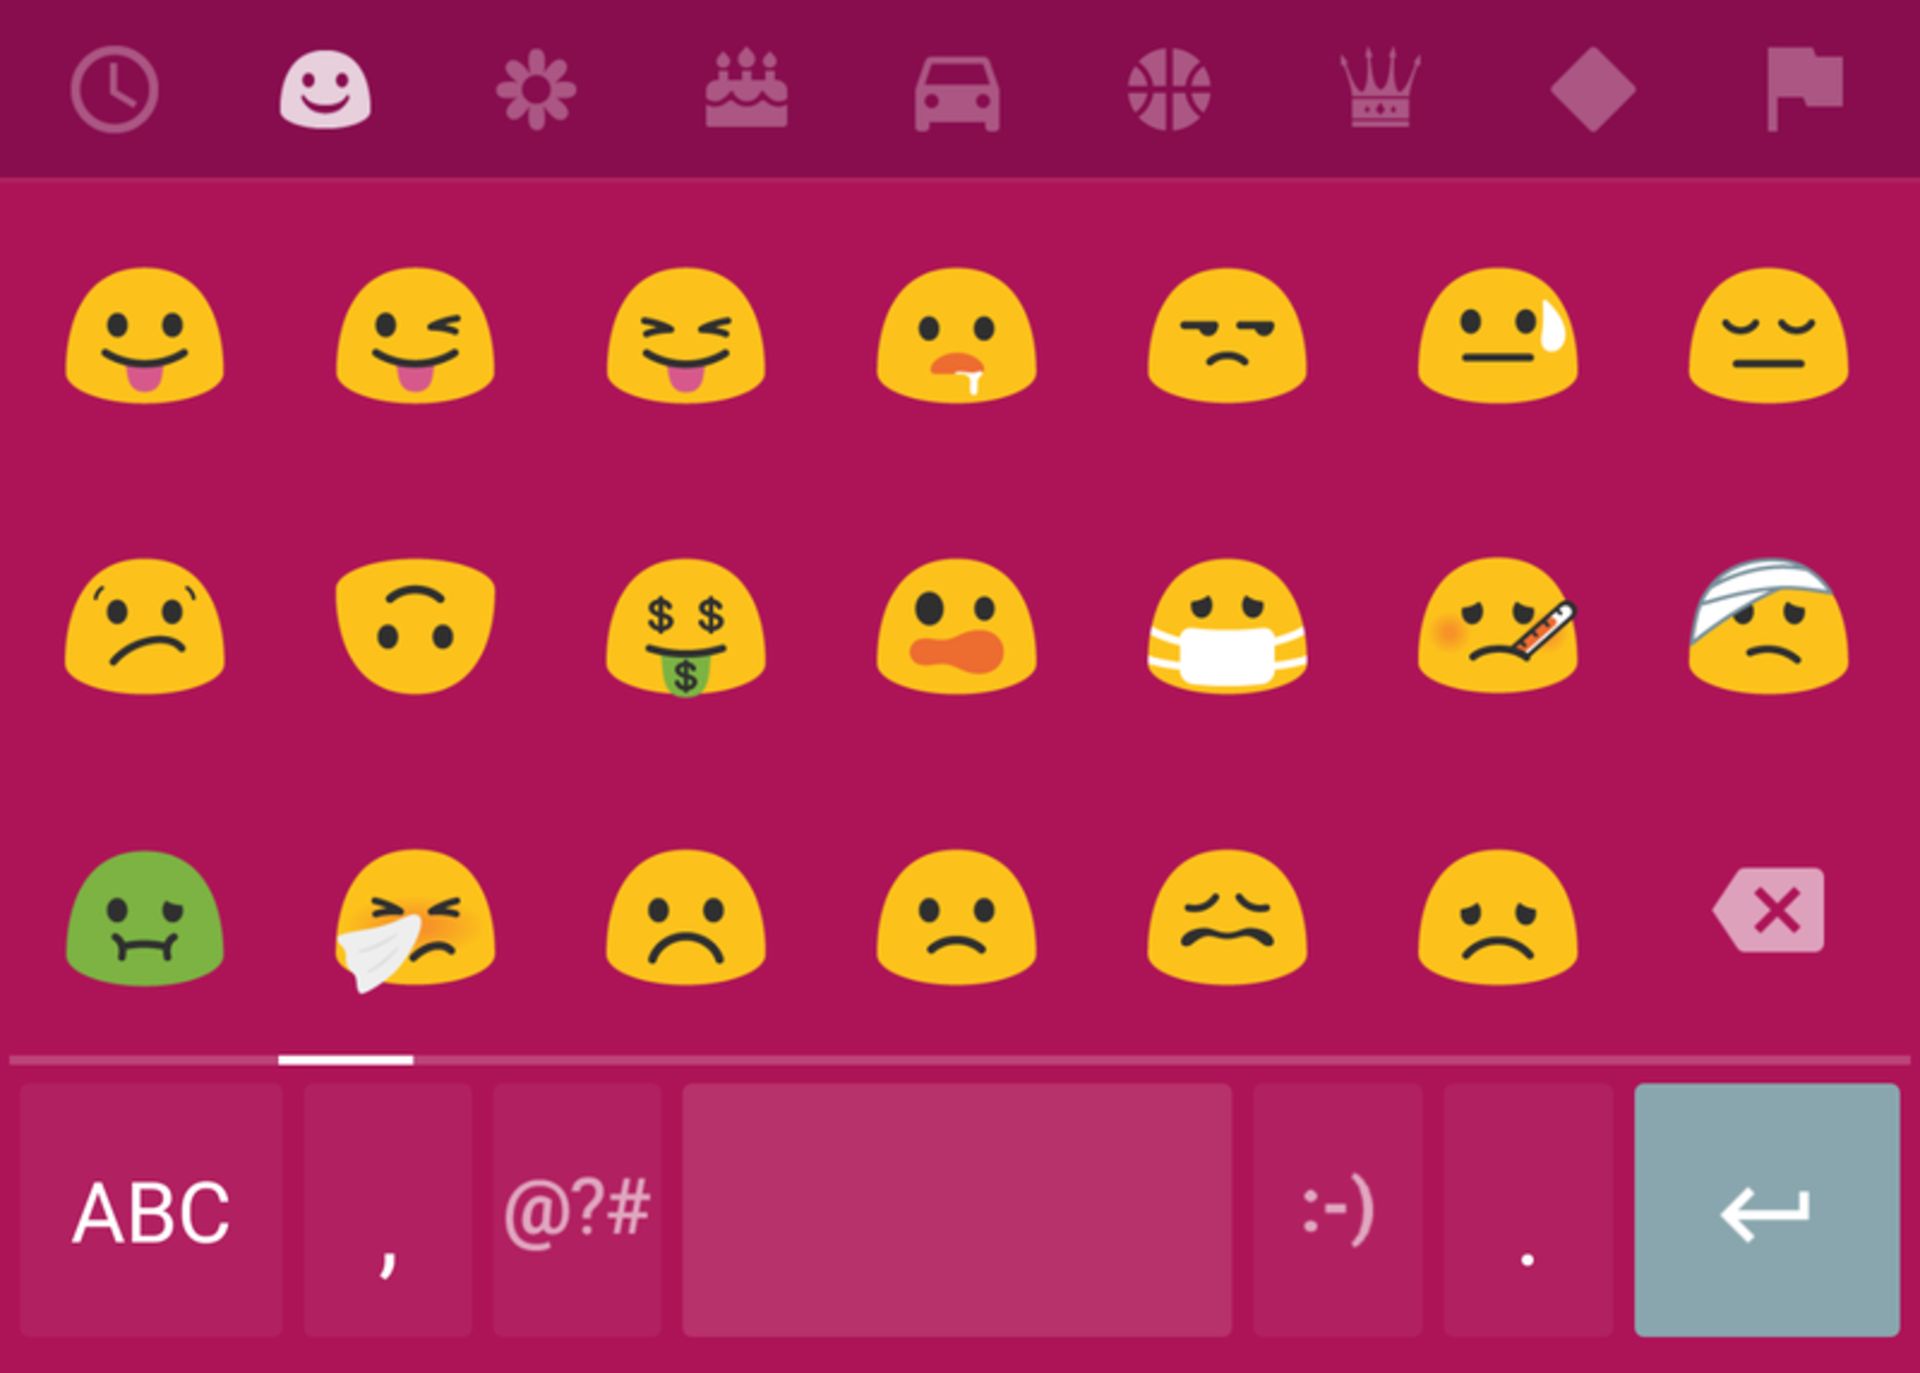 android n emojis